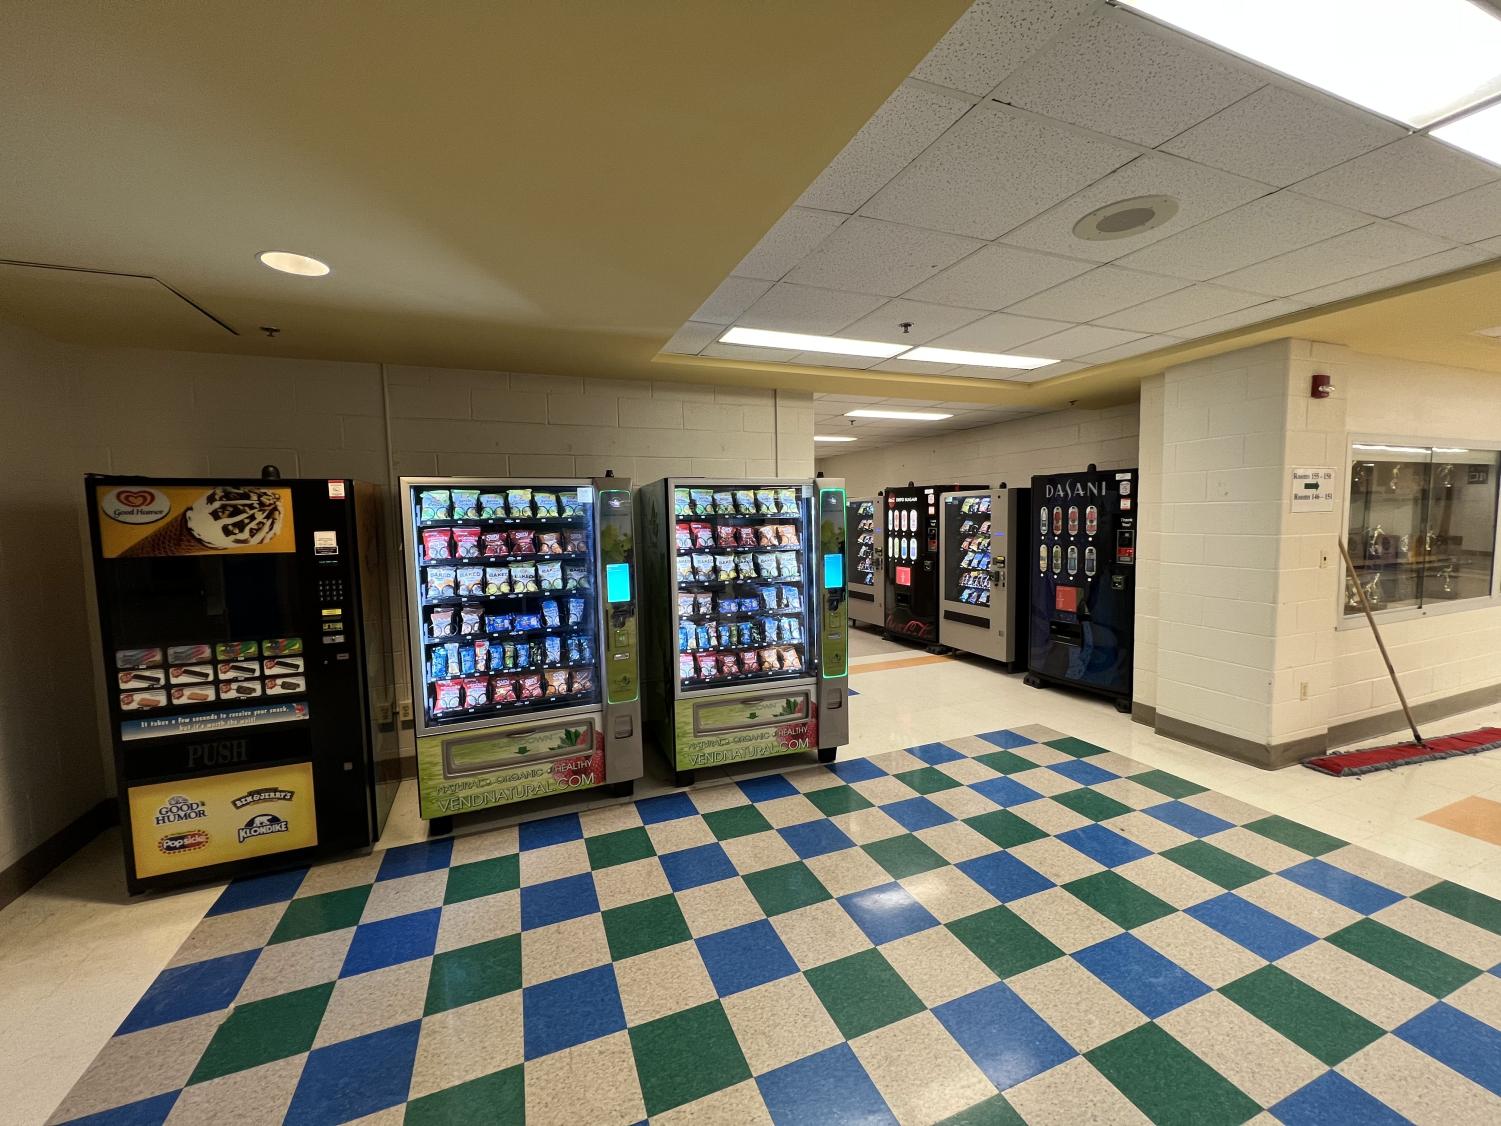 snack machines in schools